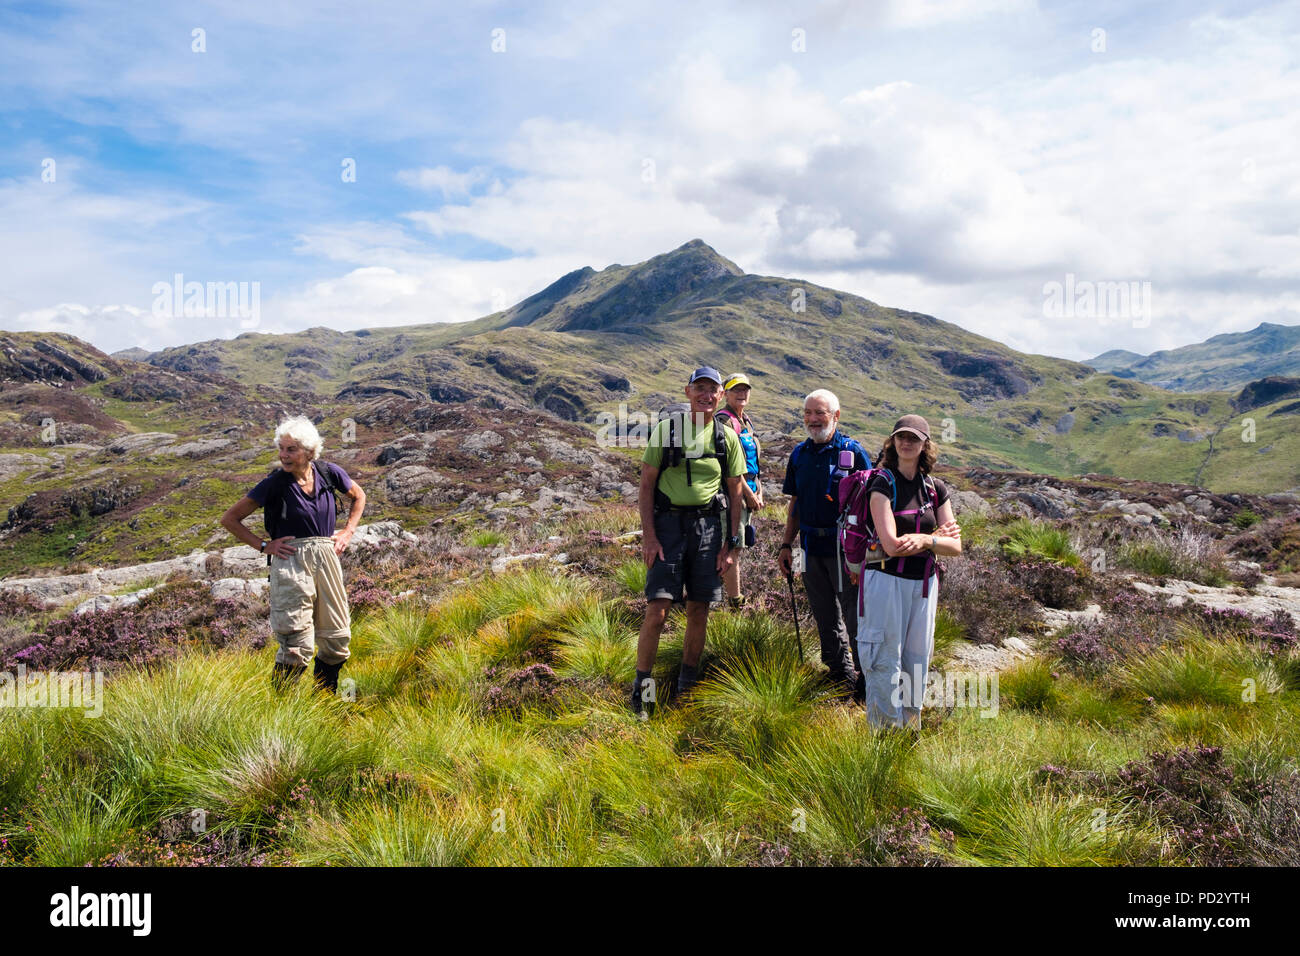 Heureux randonneurs sur an Arddu avec Cnicht montagne derrière dans Moelwyn collines du Parc National de Snowdonia en été. Nantmor Gwynedd au Pays de Galles Royaume-uni Grande-Bretagne Banque D'Images